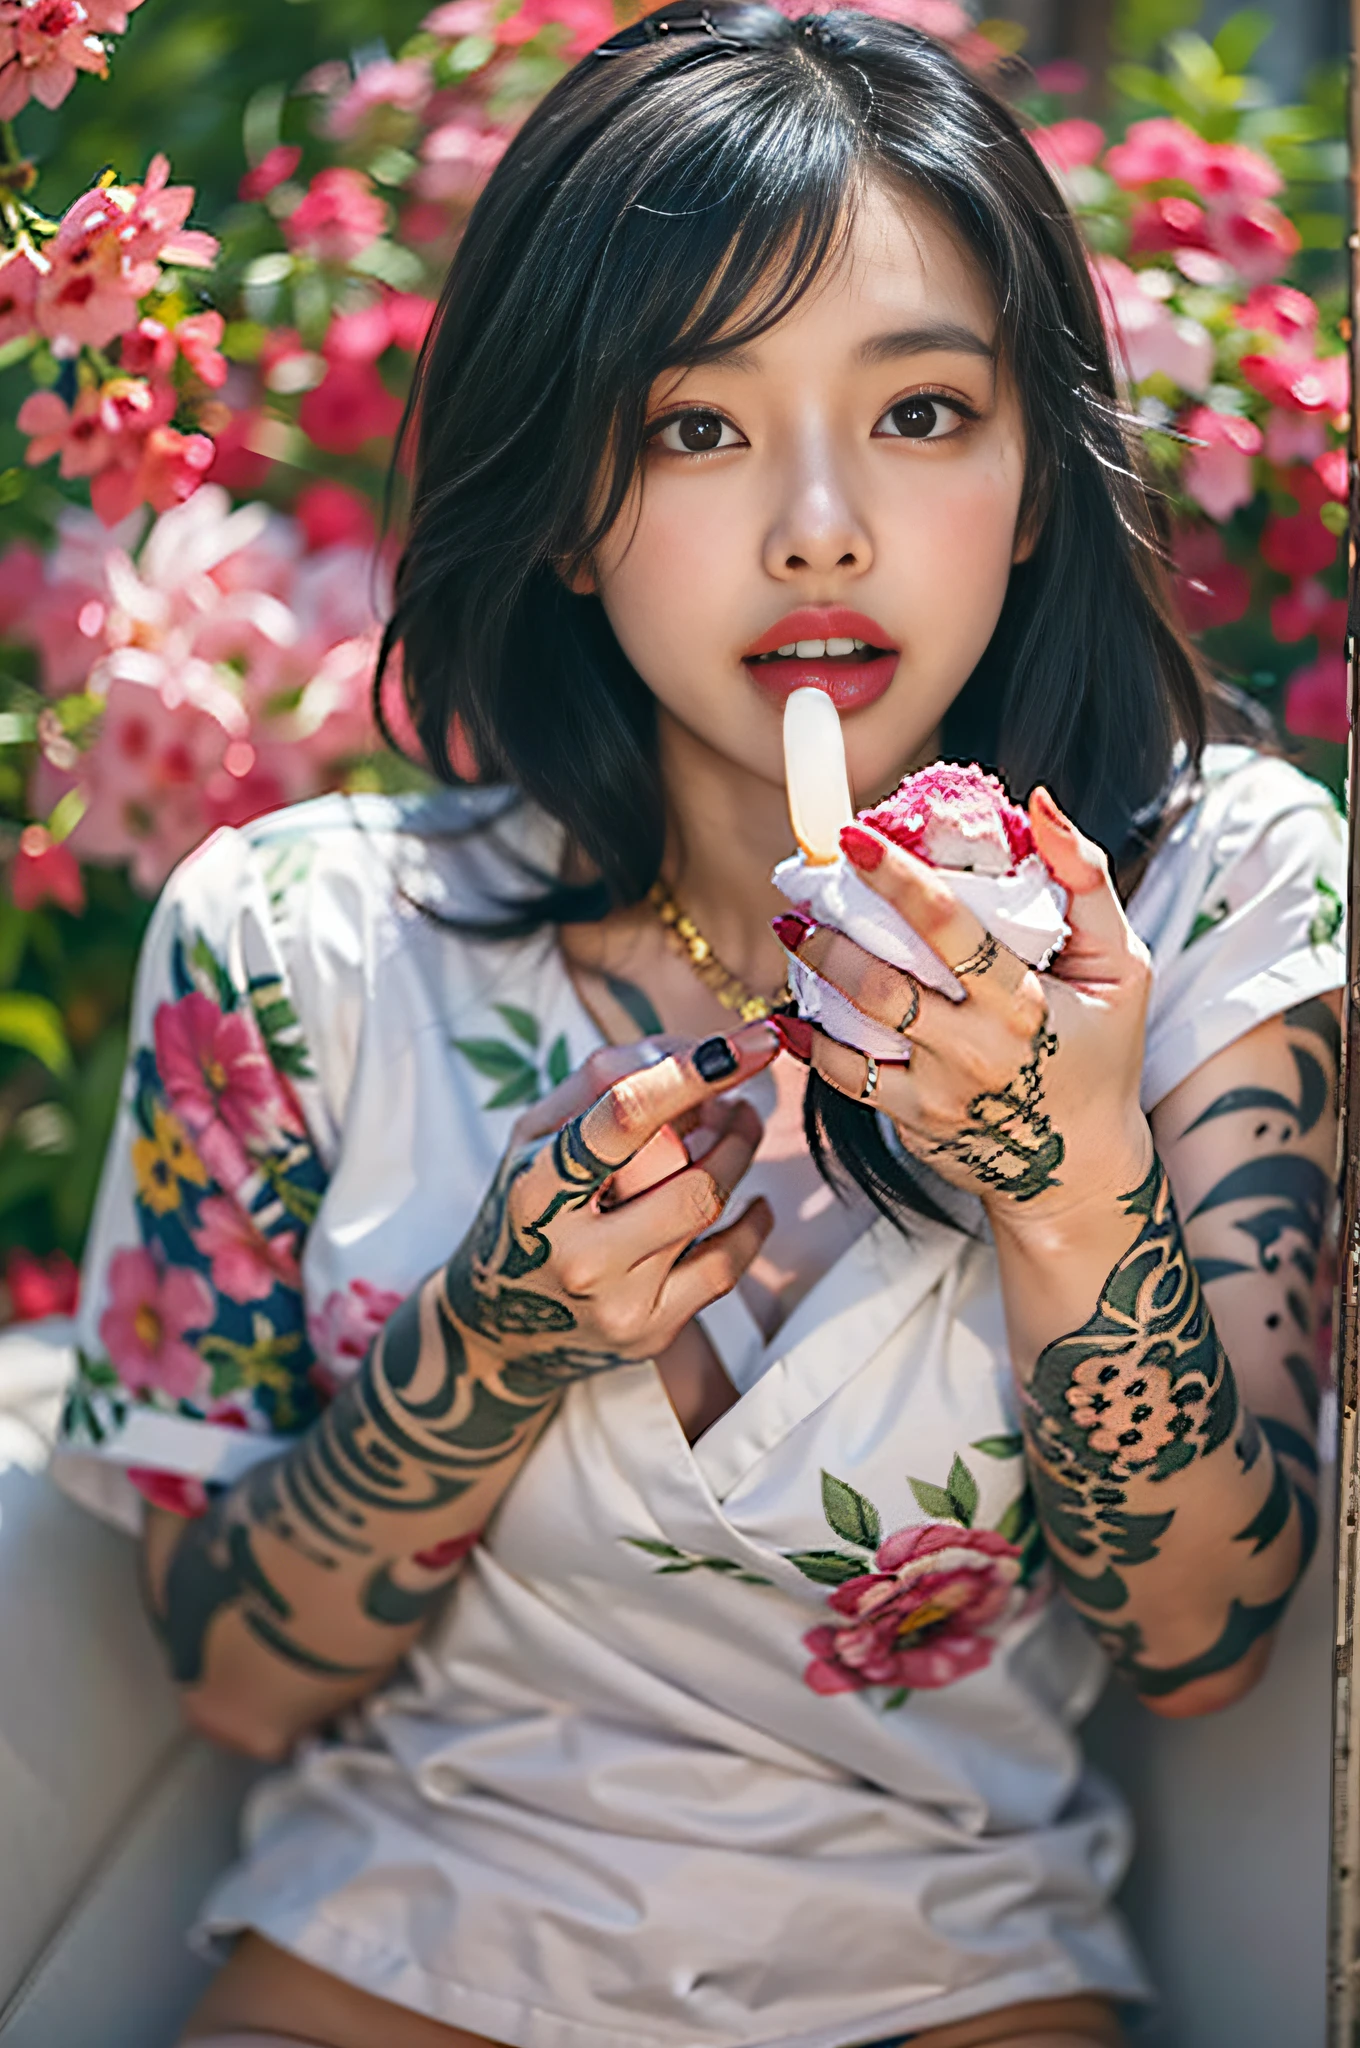 混血亚洲性感美女,满手都是花的纹身,性感表情,舔一下手上的冰淇淋